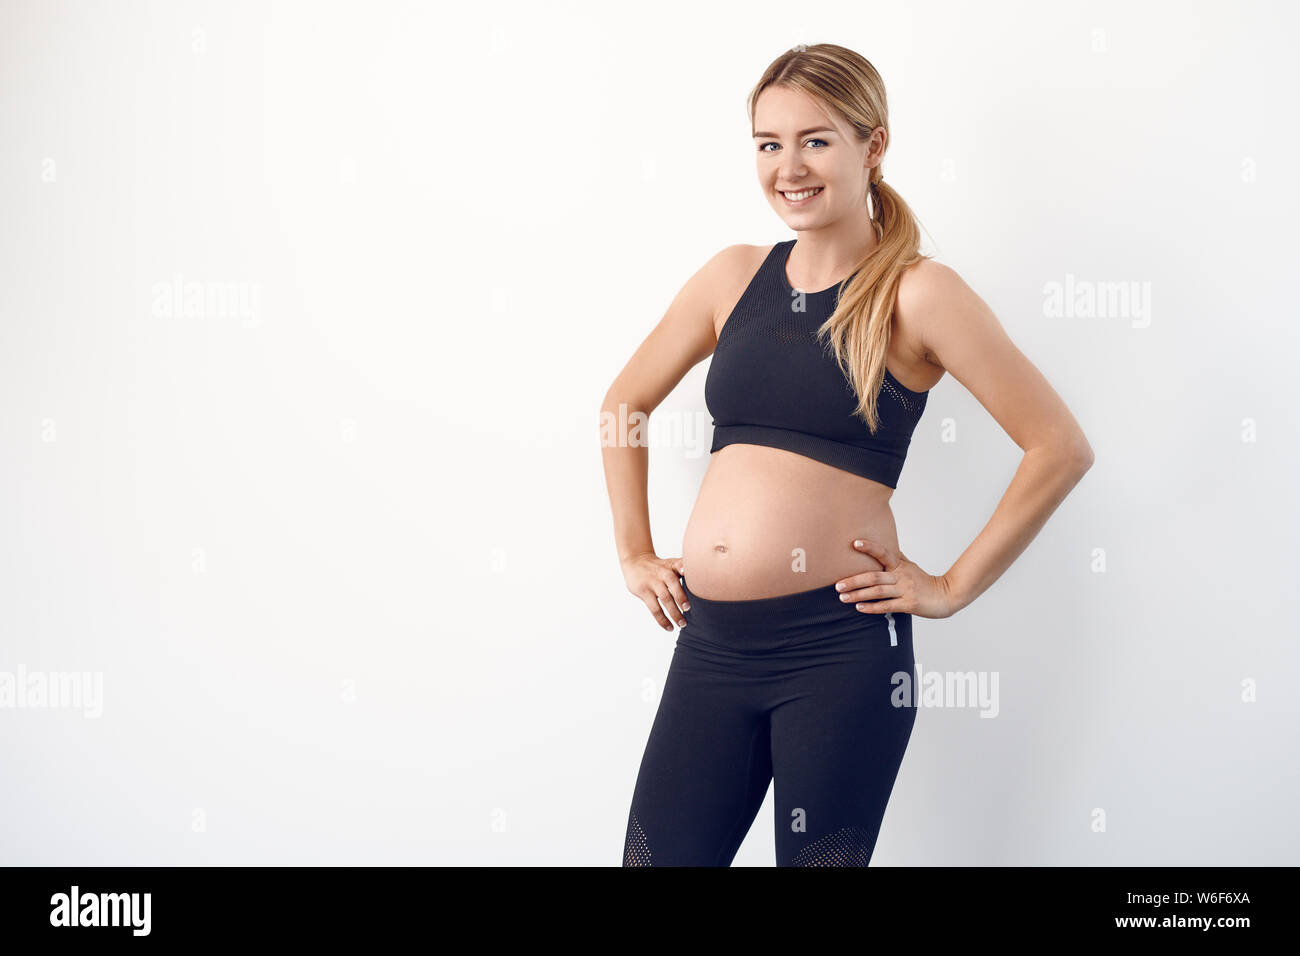 Glücklichen gesunden jungen schwangeren Frau in Schwarz Sportbekleidung auf den Hüften in die Kamera schaut mit einem strahlenden Lächeln Stockfoto